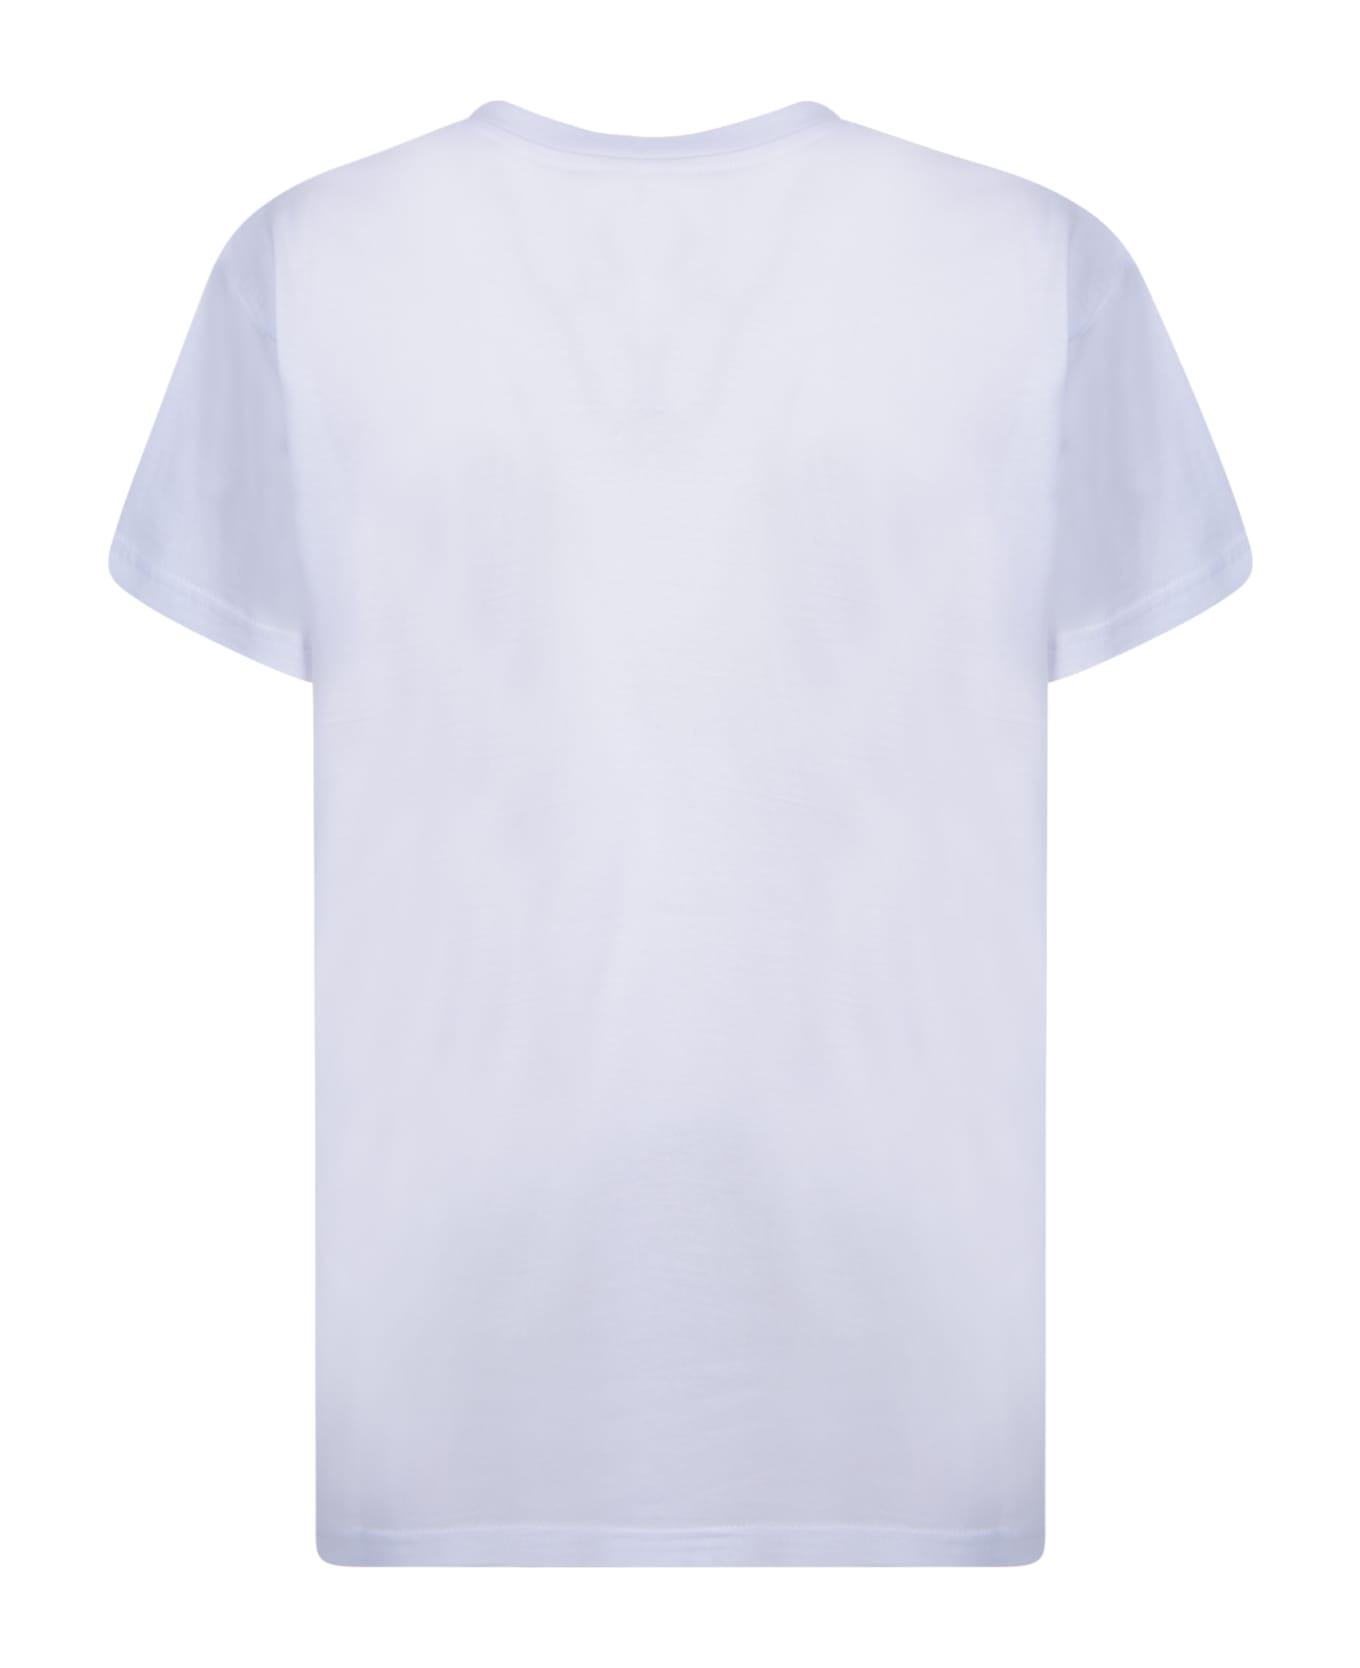 Alessandro Enriquez Santa Rosalia White T-shirt - White Tシャツ